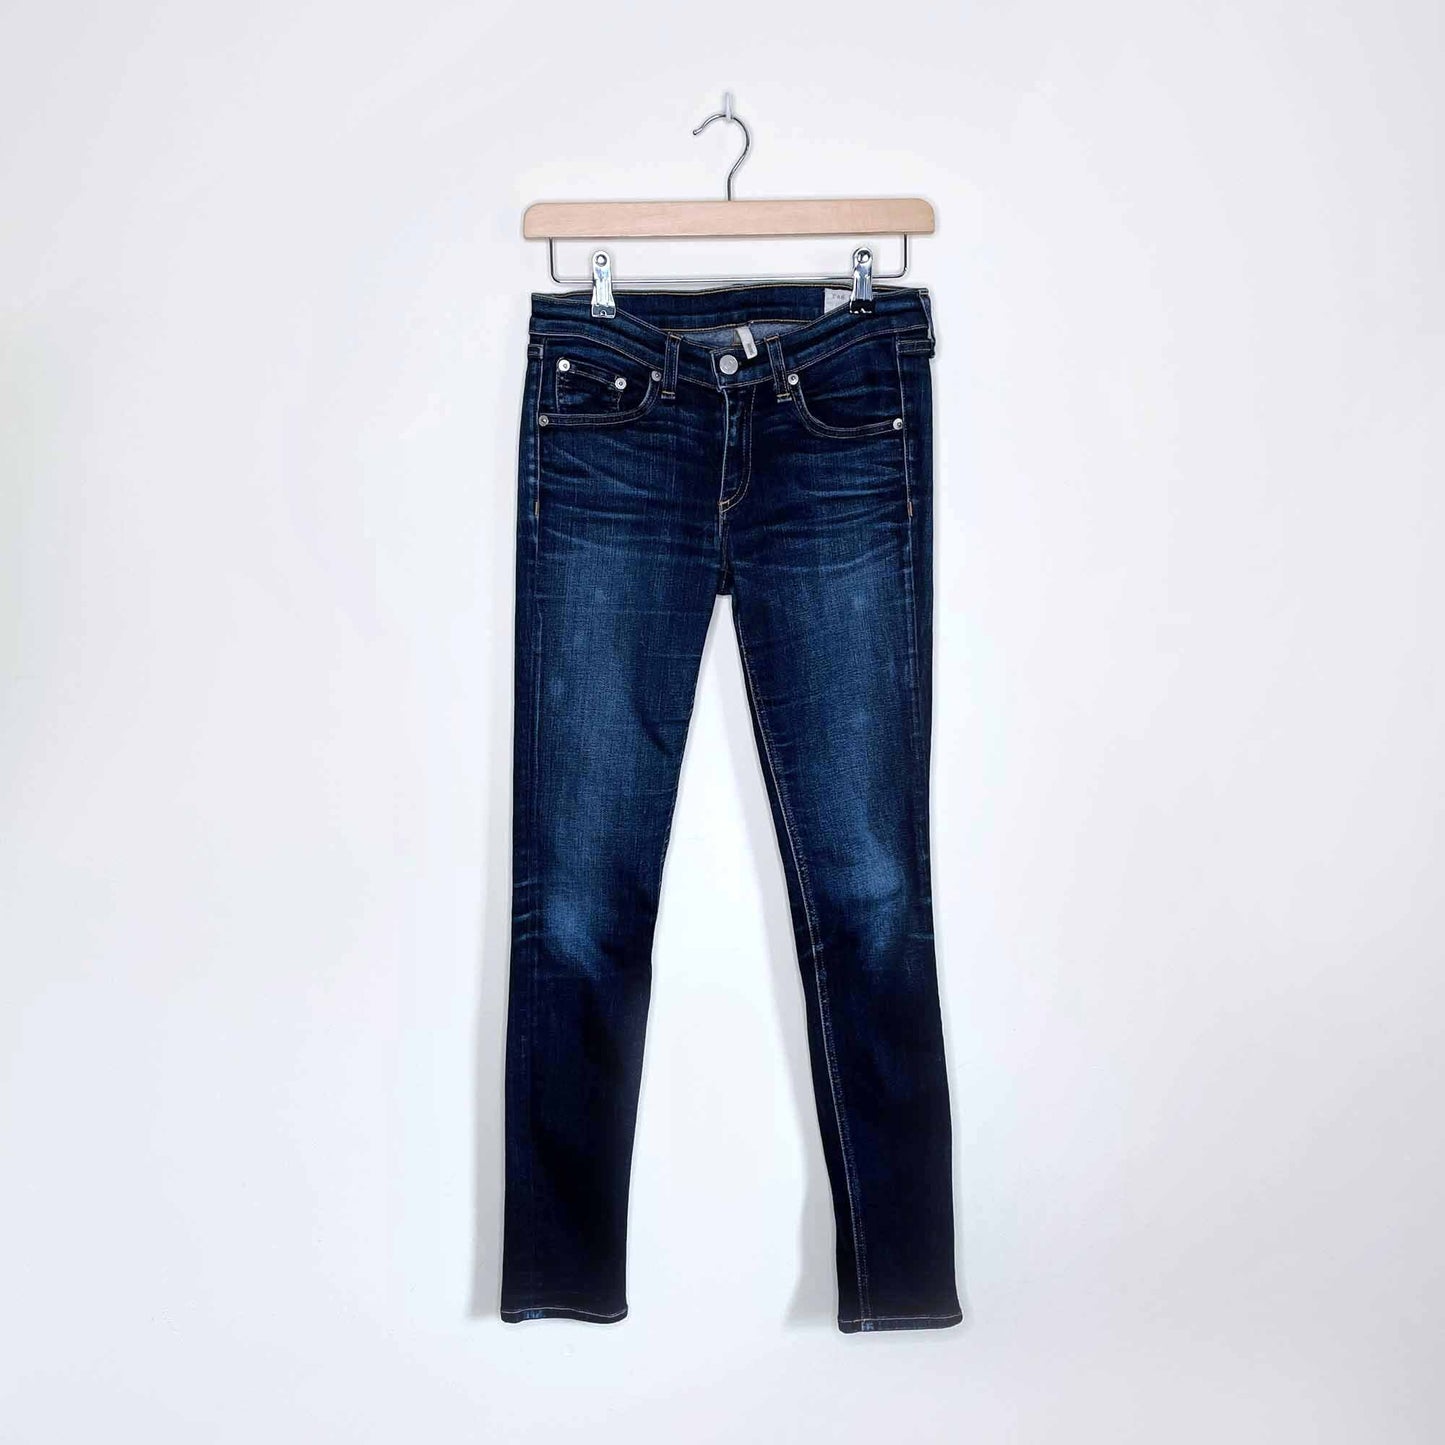 rag & bone skinny jeans in kensington wash - size 26